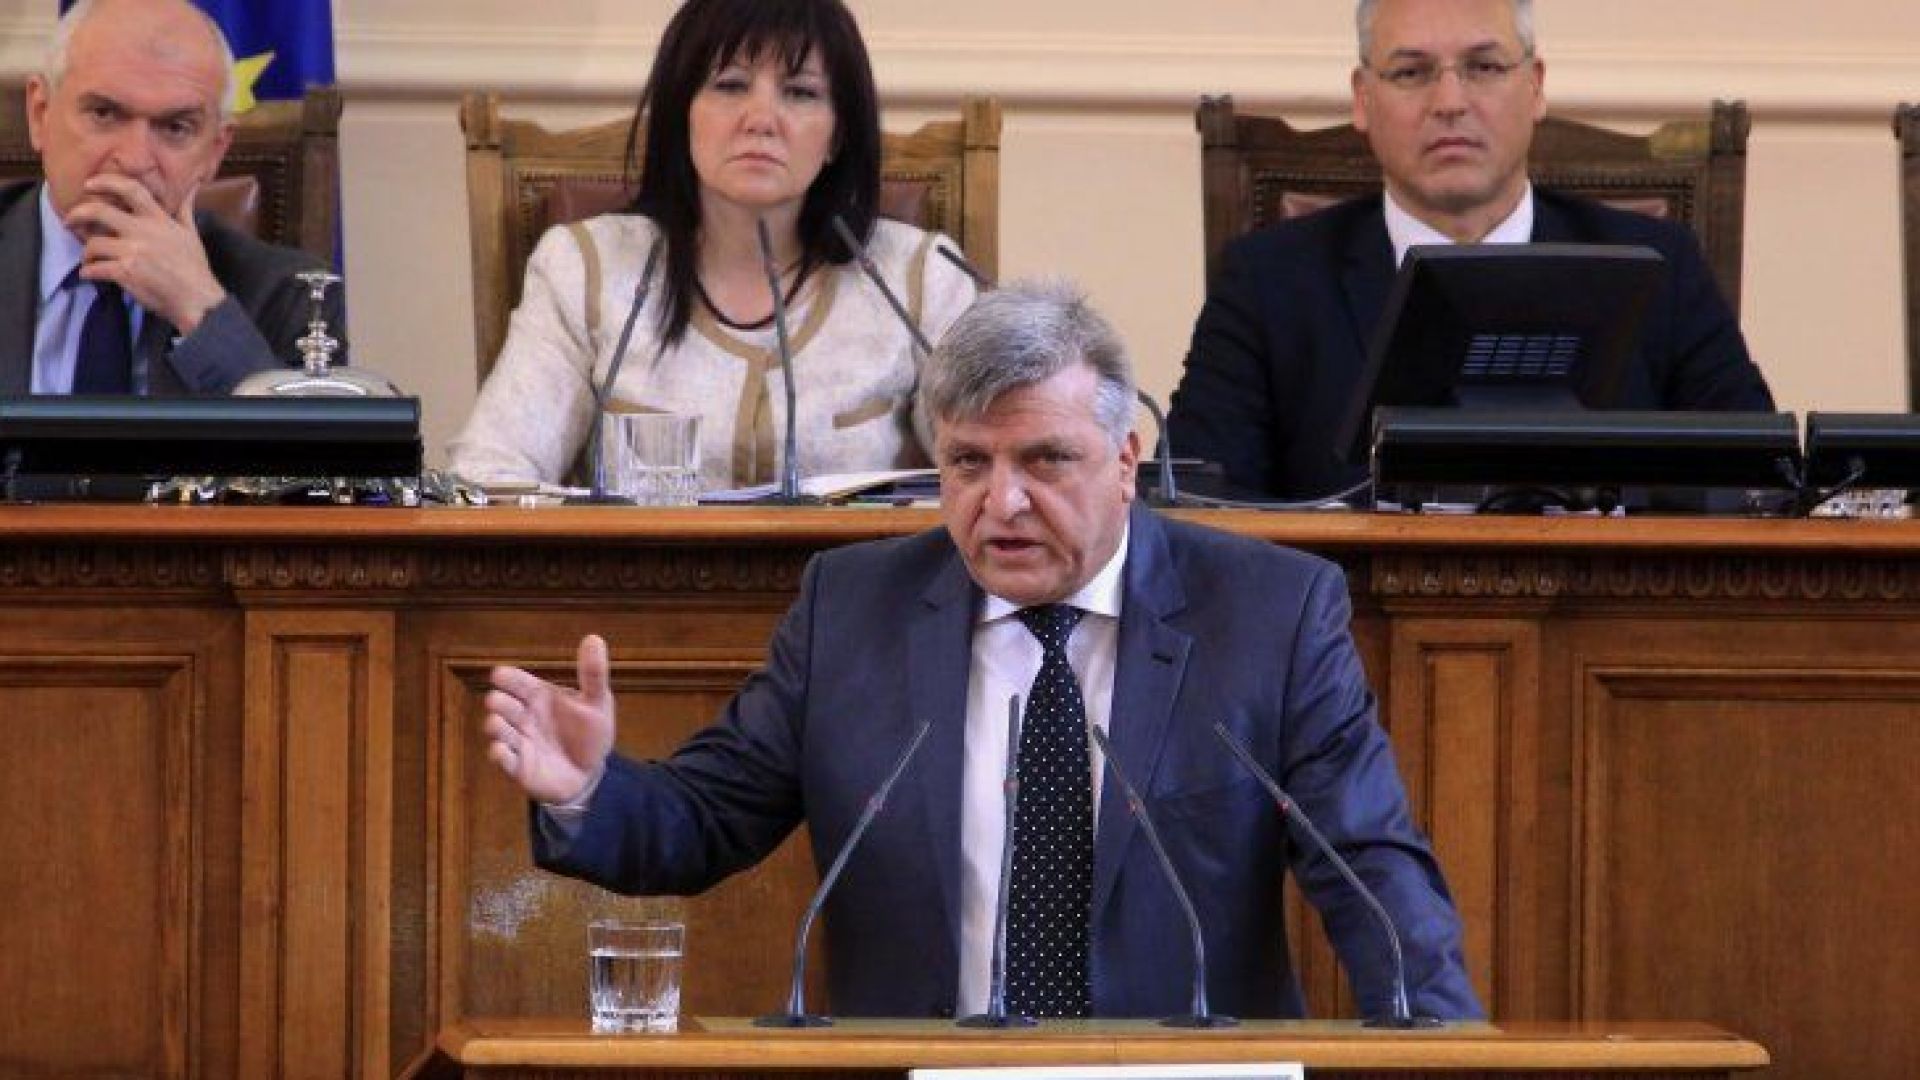 Софийски градски съд (СГС) оправда народния представител от ПГ на